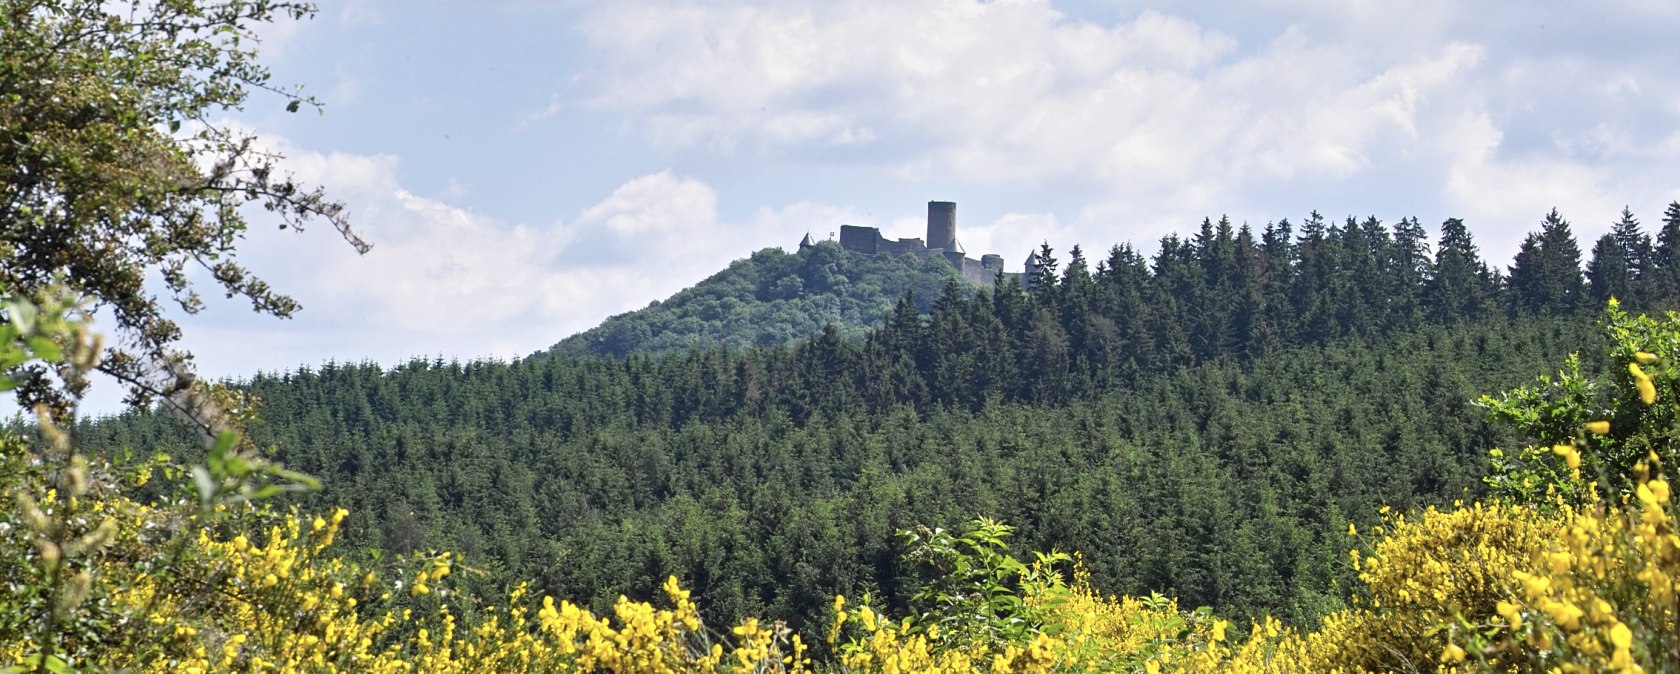 Burgruine Nürburg in Nürburg in der Eifel, © Verbandsgemeinde Adenau